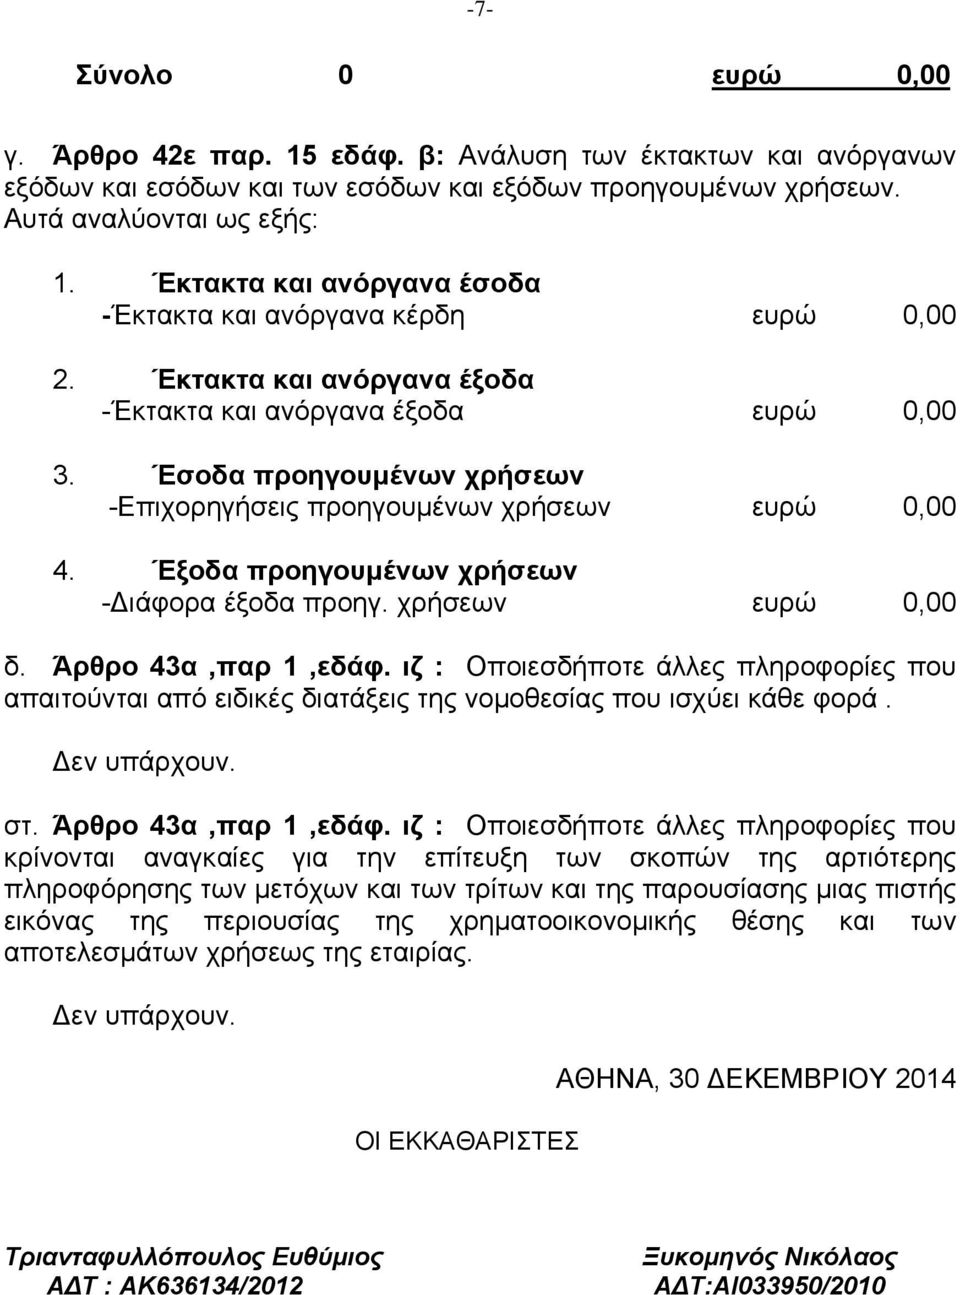 Έσοδα προηγουμένων χρήσεων -Επιχορηγήσεις προηγουμένων χρήσεων ευρώ 0,00 4. Έξοδα προηγουμένων χρήσεων - ιάφορα έξοδα προηγ. χρήσεων ευρώ 0,00 δ. Άρθρο 43α,παρ 1,εδάφ.